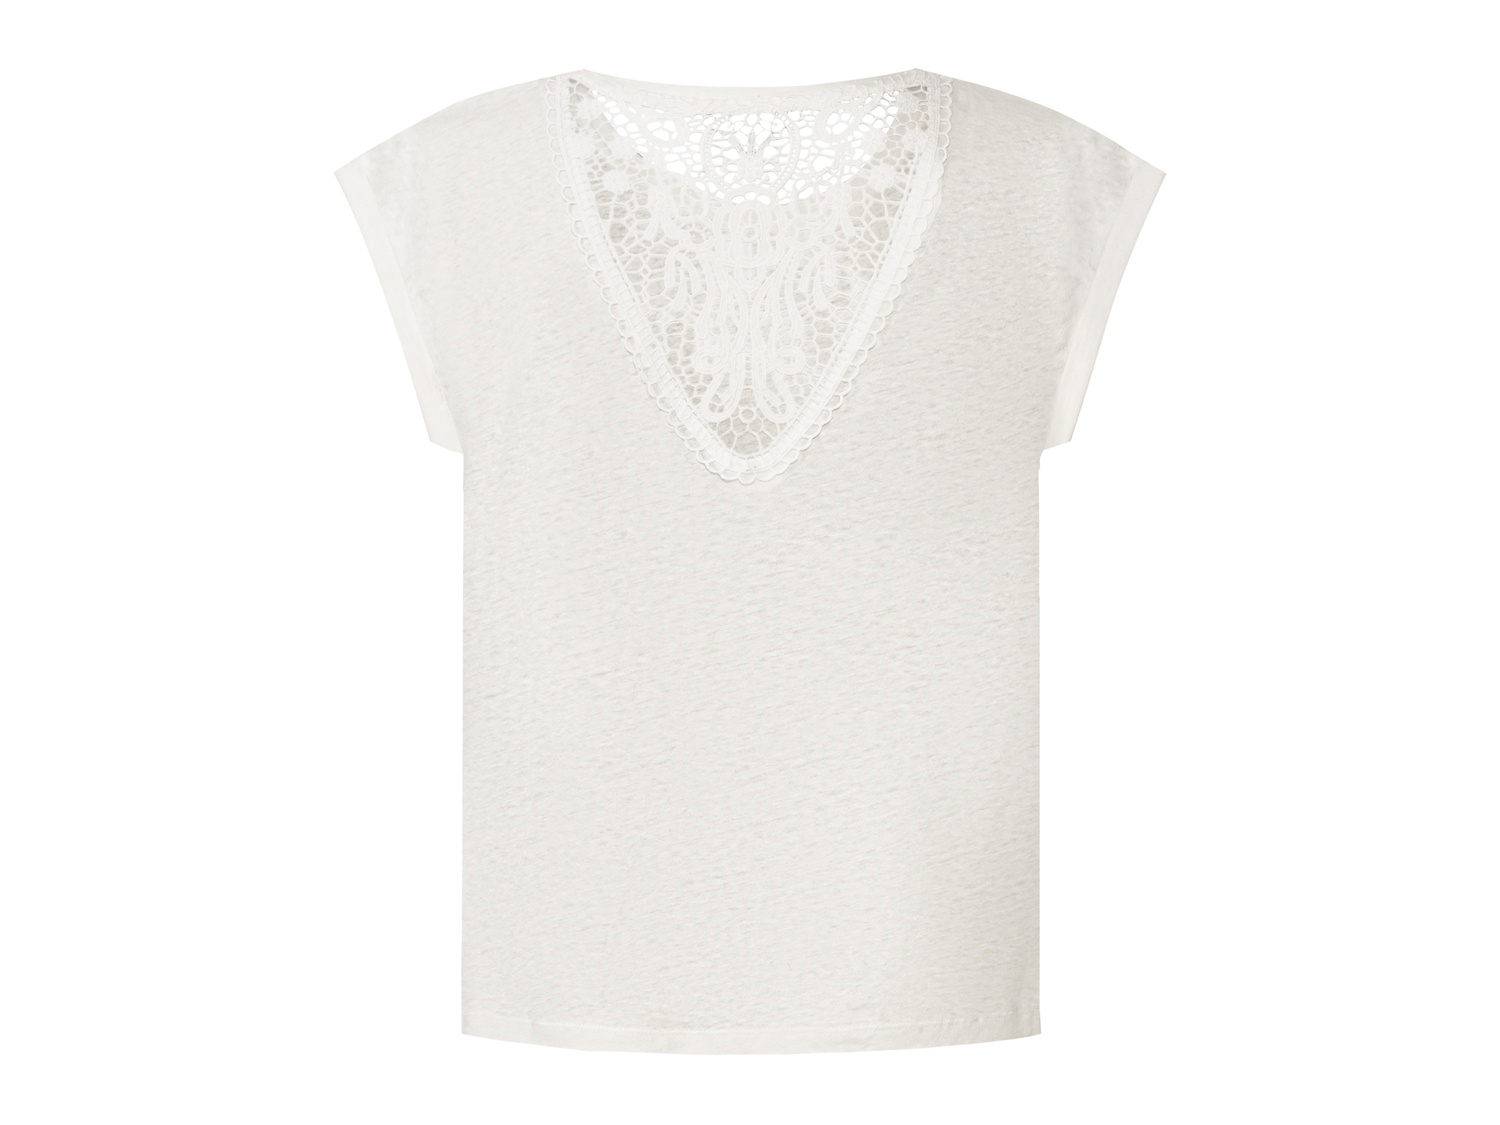 T-Shirt in canapa da donna Esmara, prezzo 8.99 &#8364; 
Misure: S-L 
- Con cotone ...